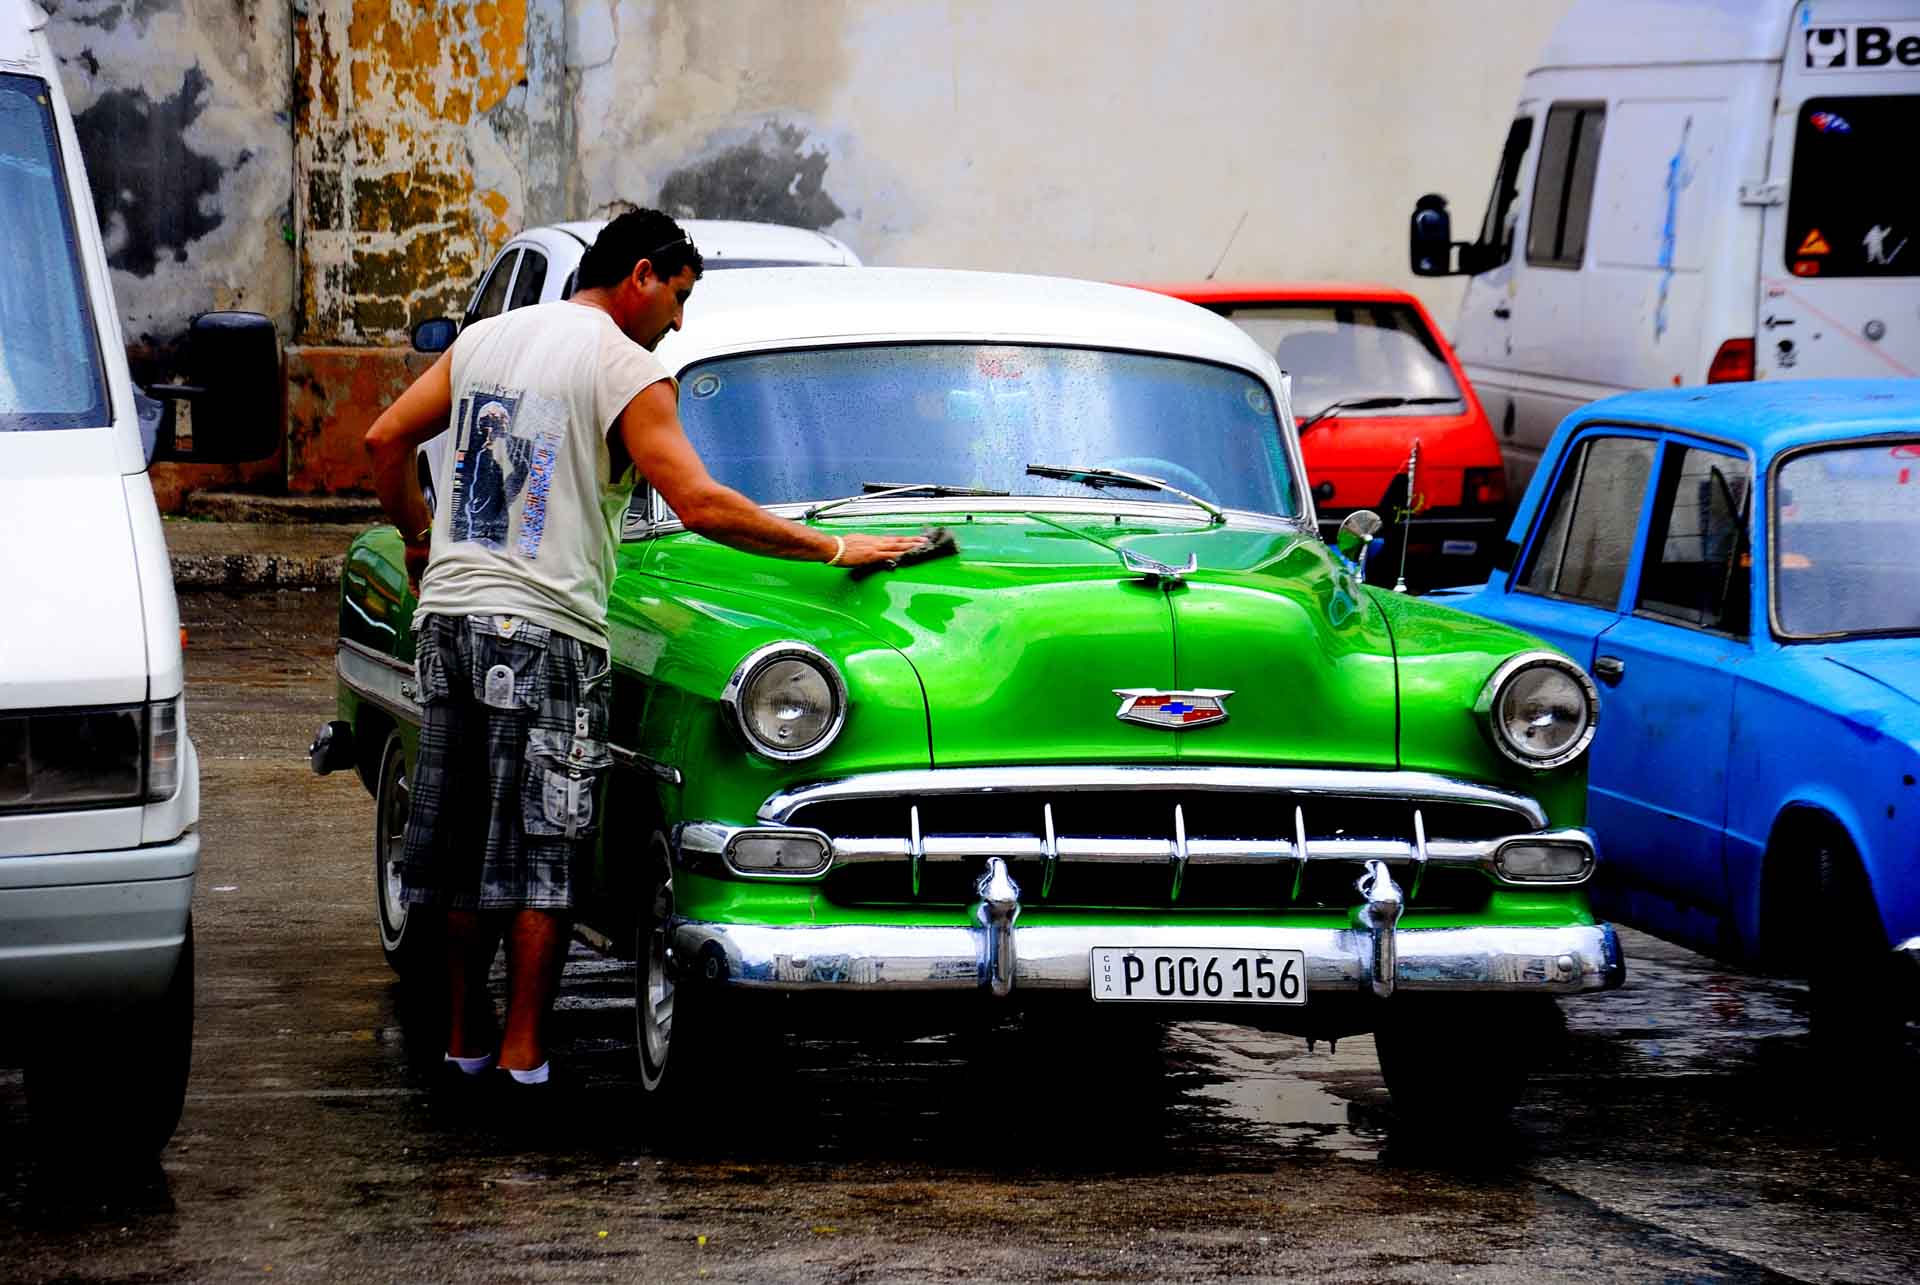 Havana Cuba Vintage Car 5, havana, cuba, pescart, photo blog, travel blog, blog, photo travel blog, enrico pescantini, pescantini